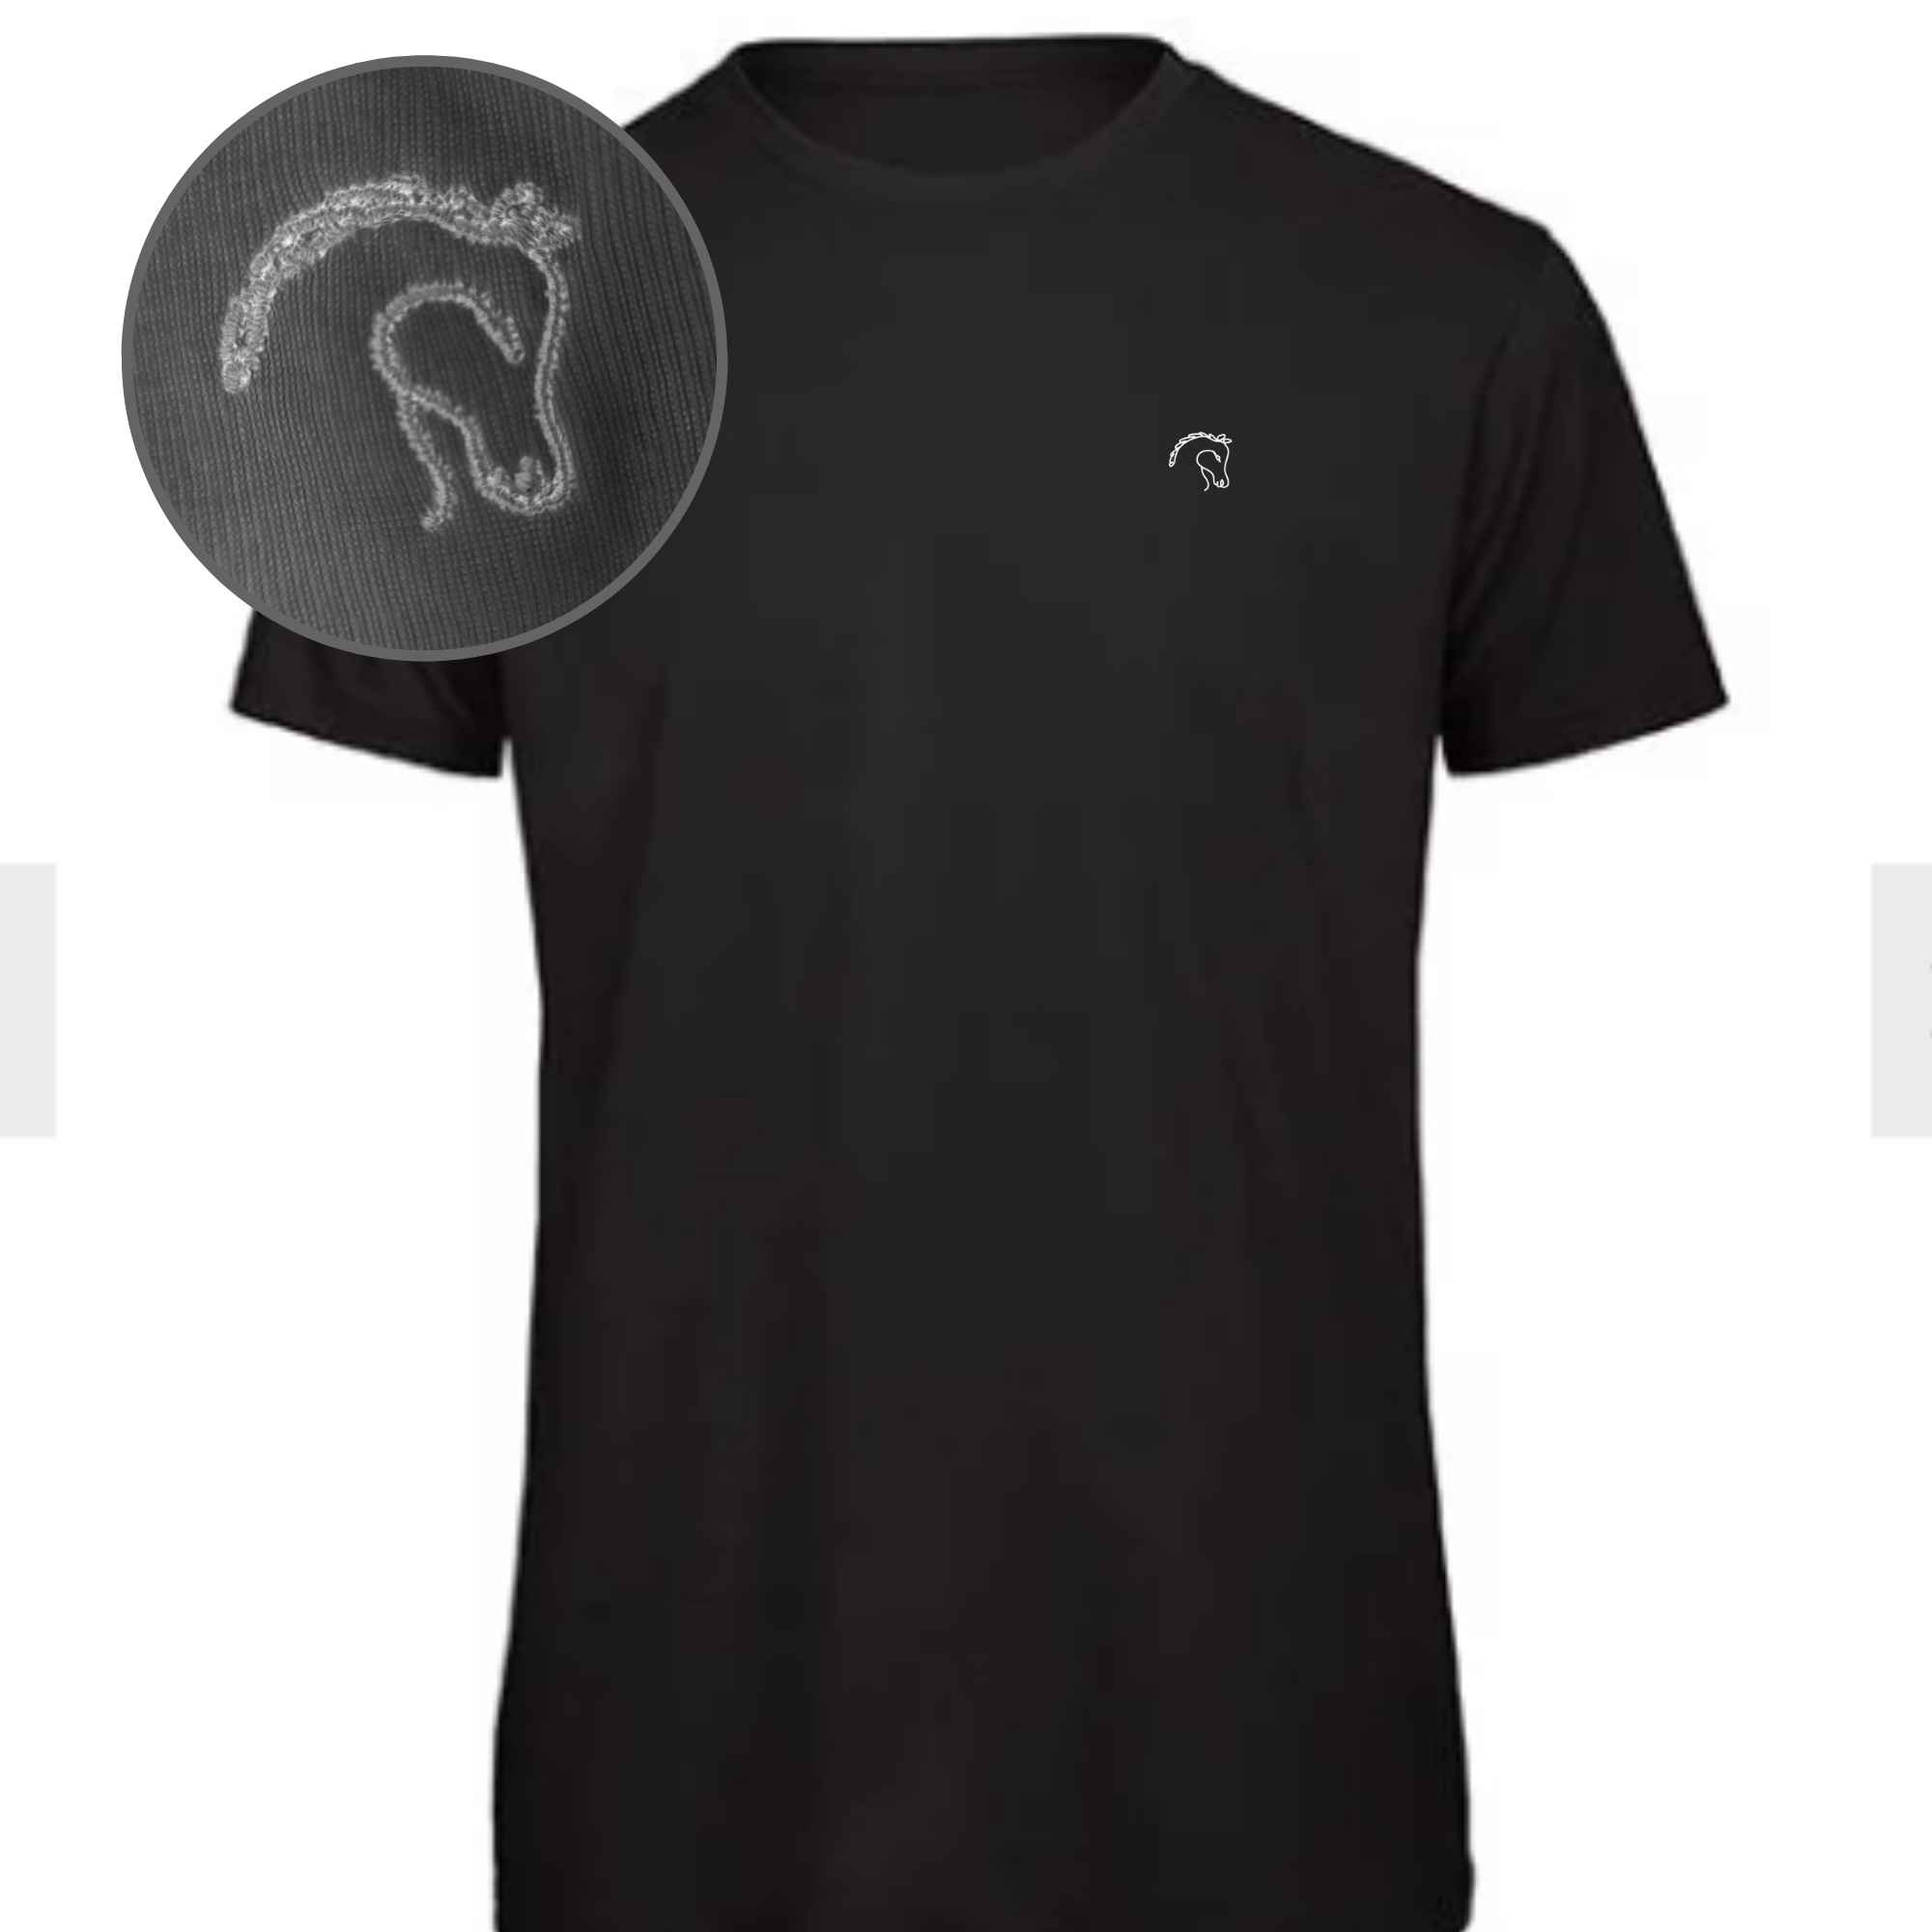 Besticktes T-Shirt schwarz mit hochwertigem Pferdekopf-Stick als Motiv  auf der Brust 